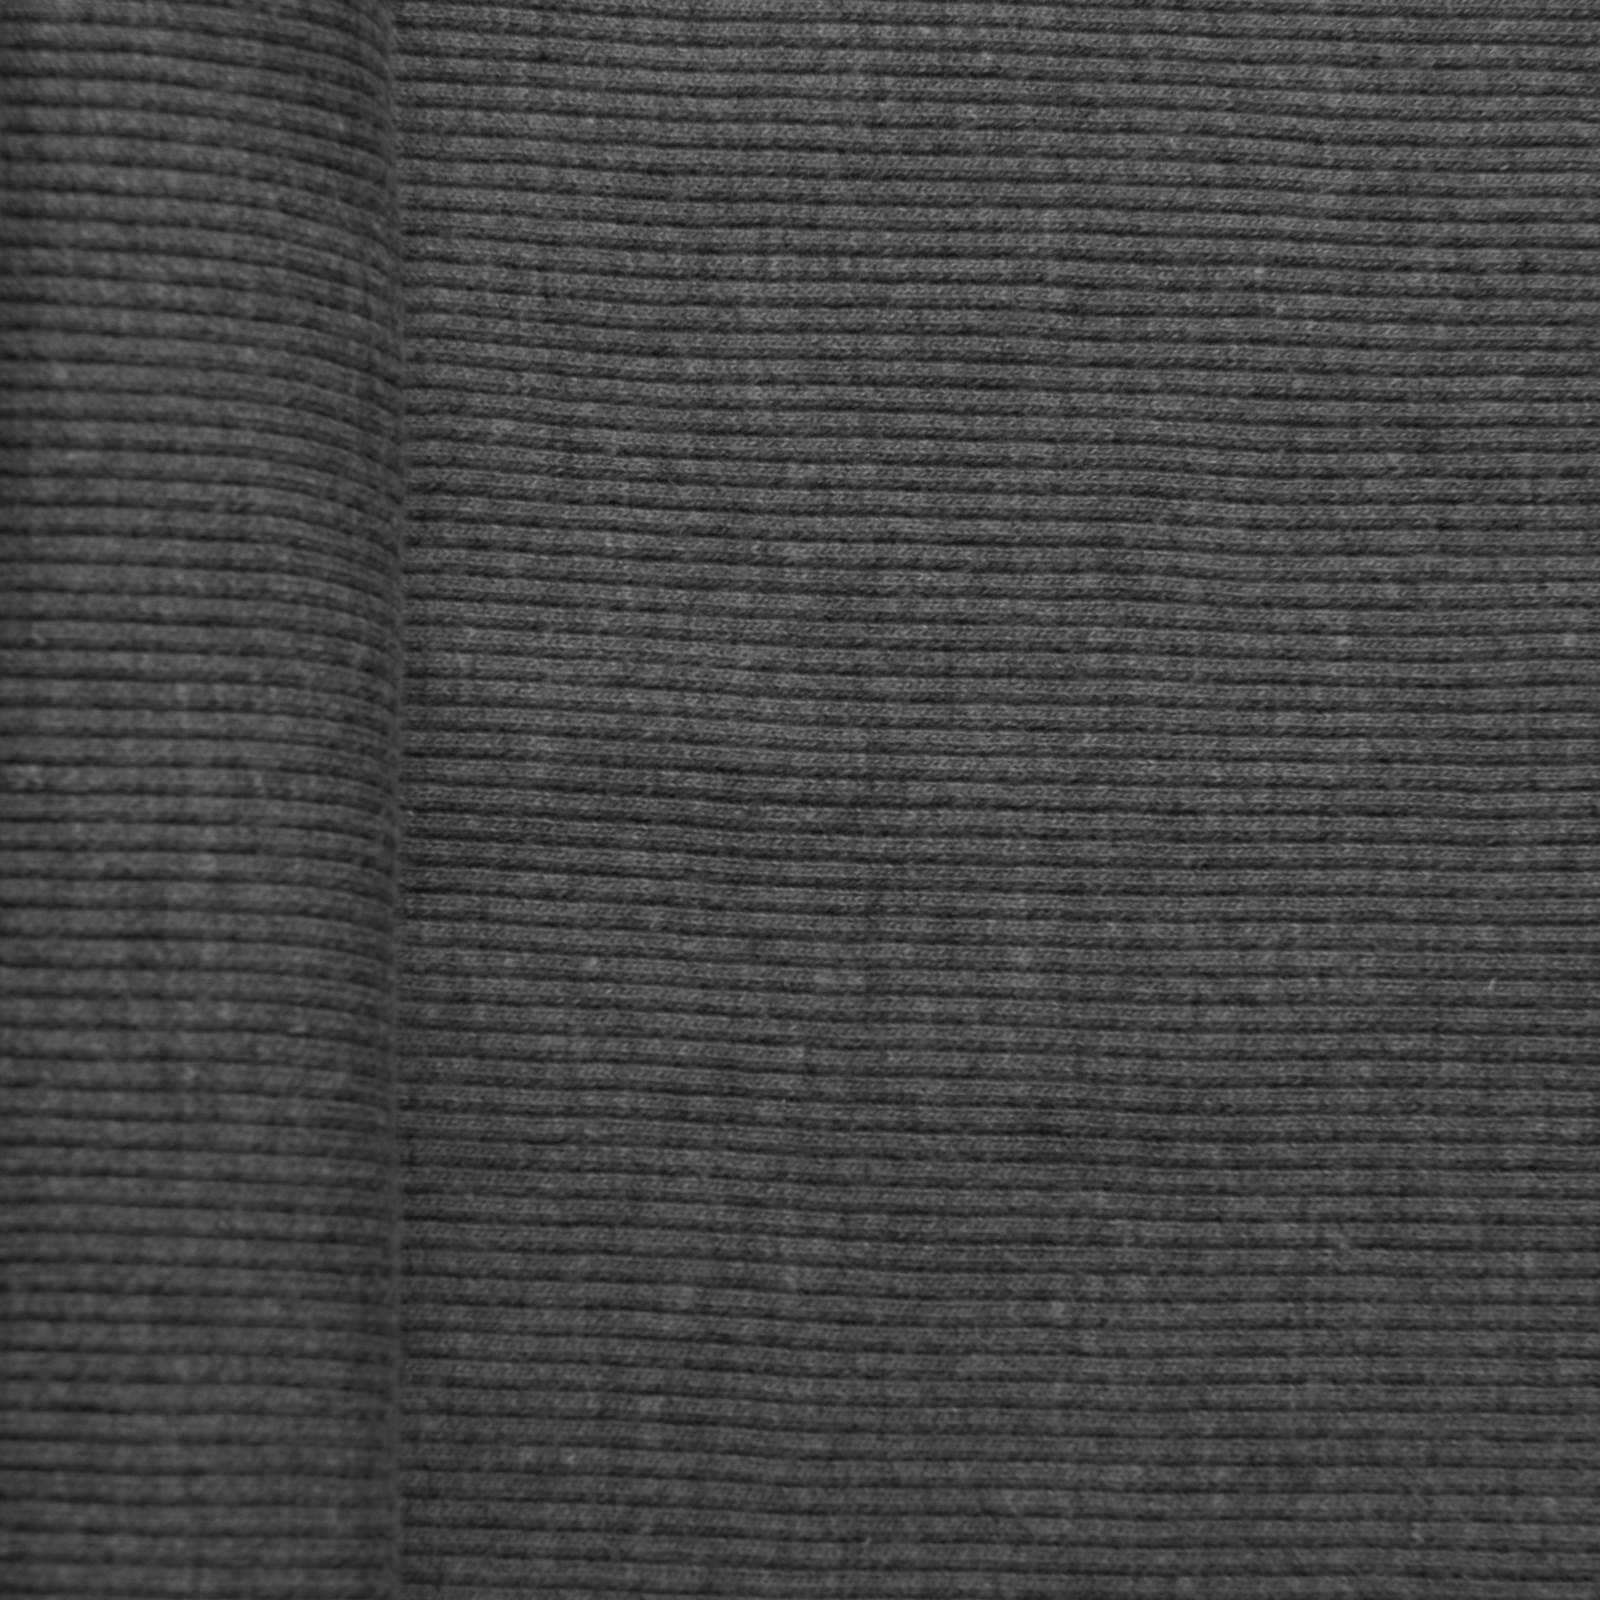 Knitted cuffs - tubular fabric - grey - per 10cm